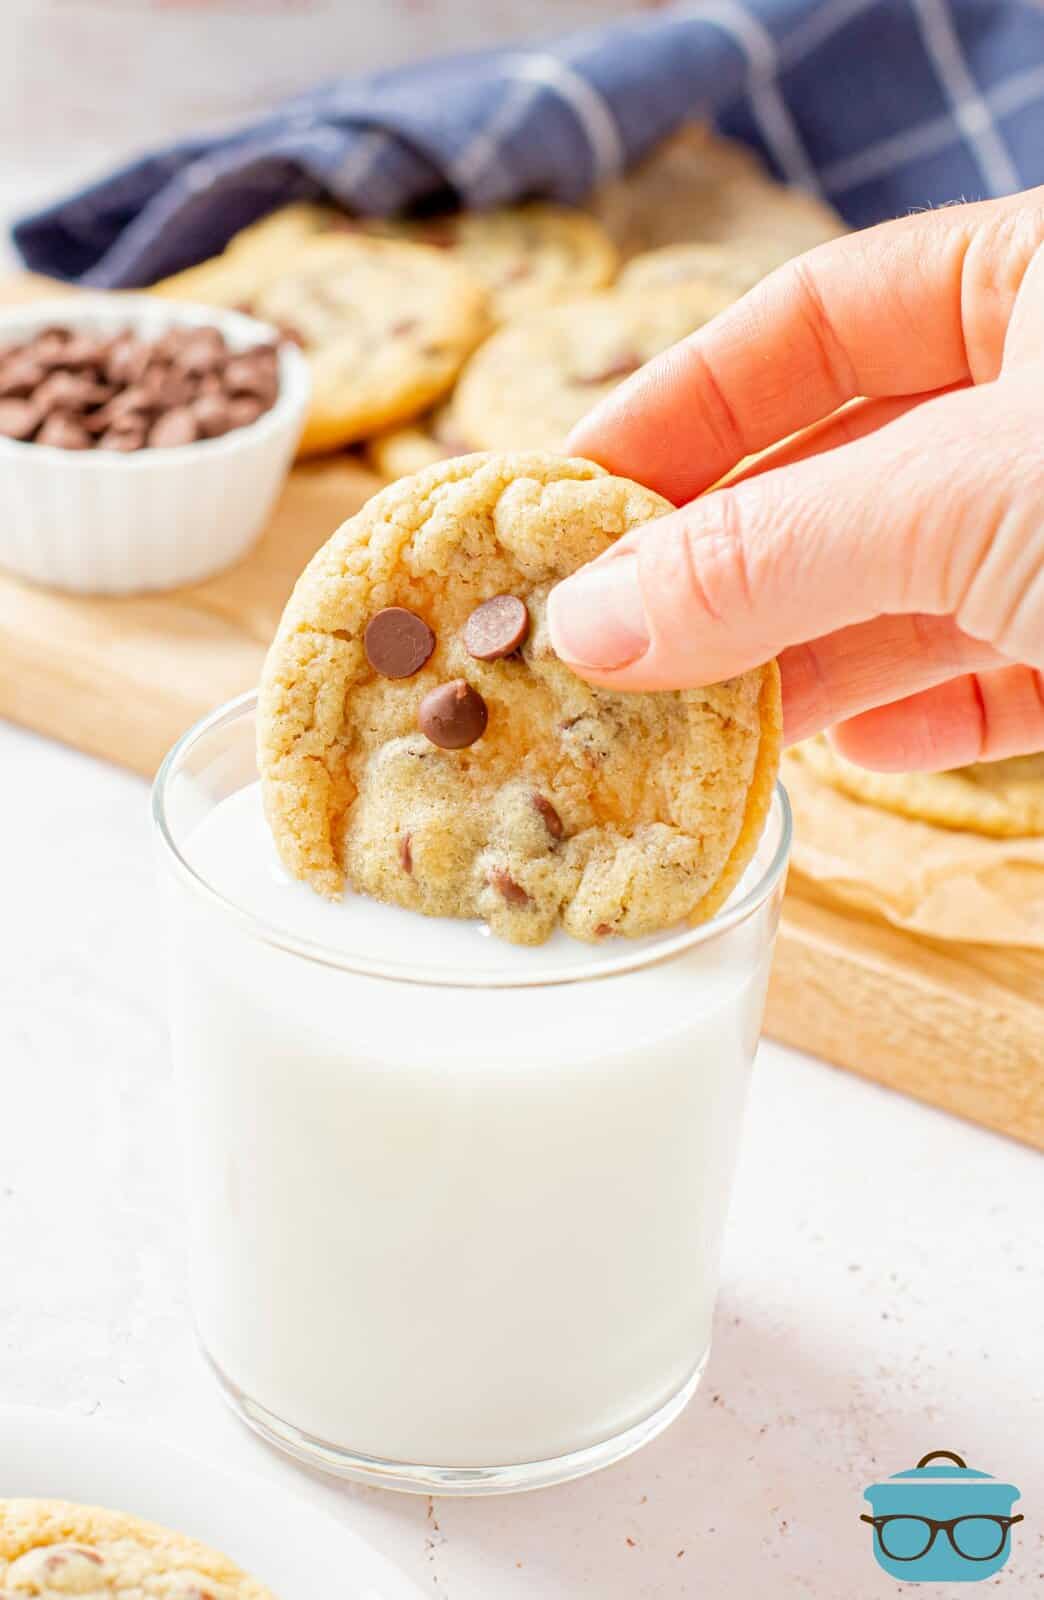 Immergere a mano un biscotto gommoso con gocce di cioccolato nel latte.